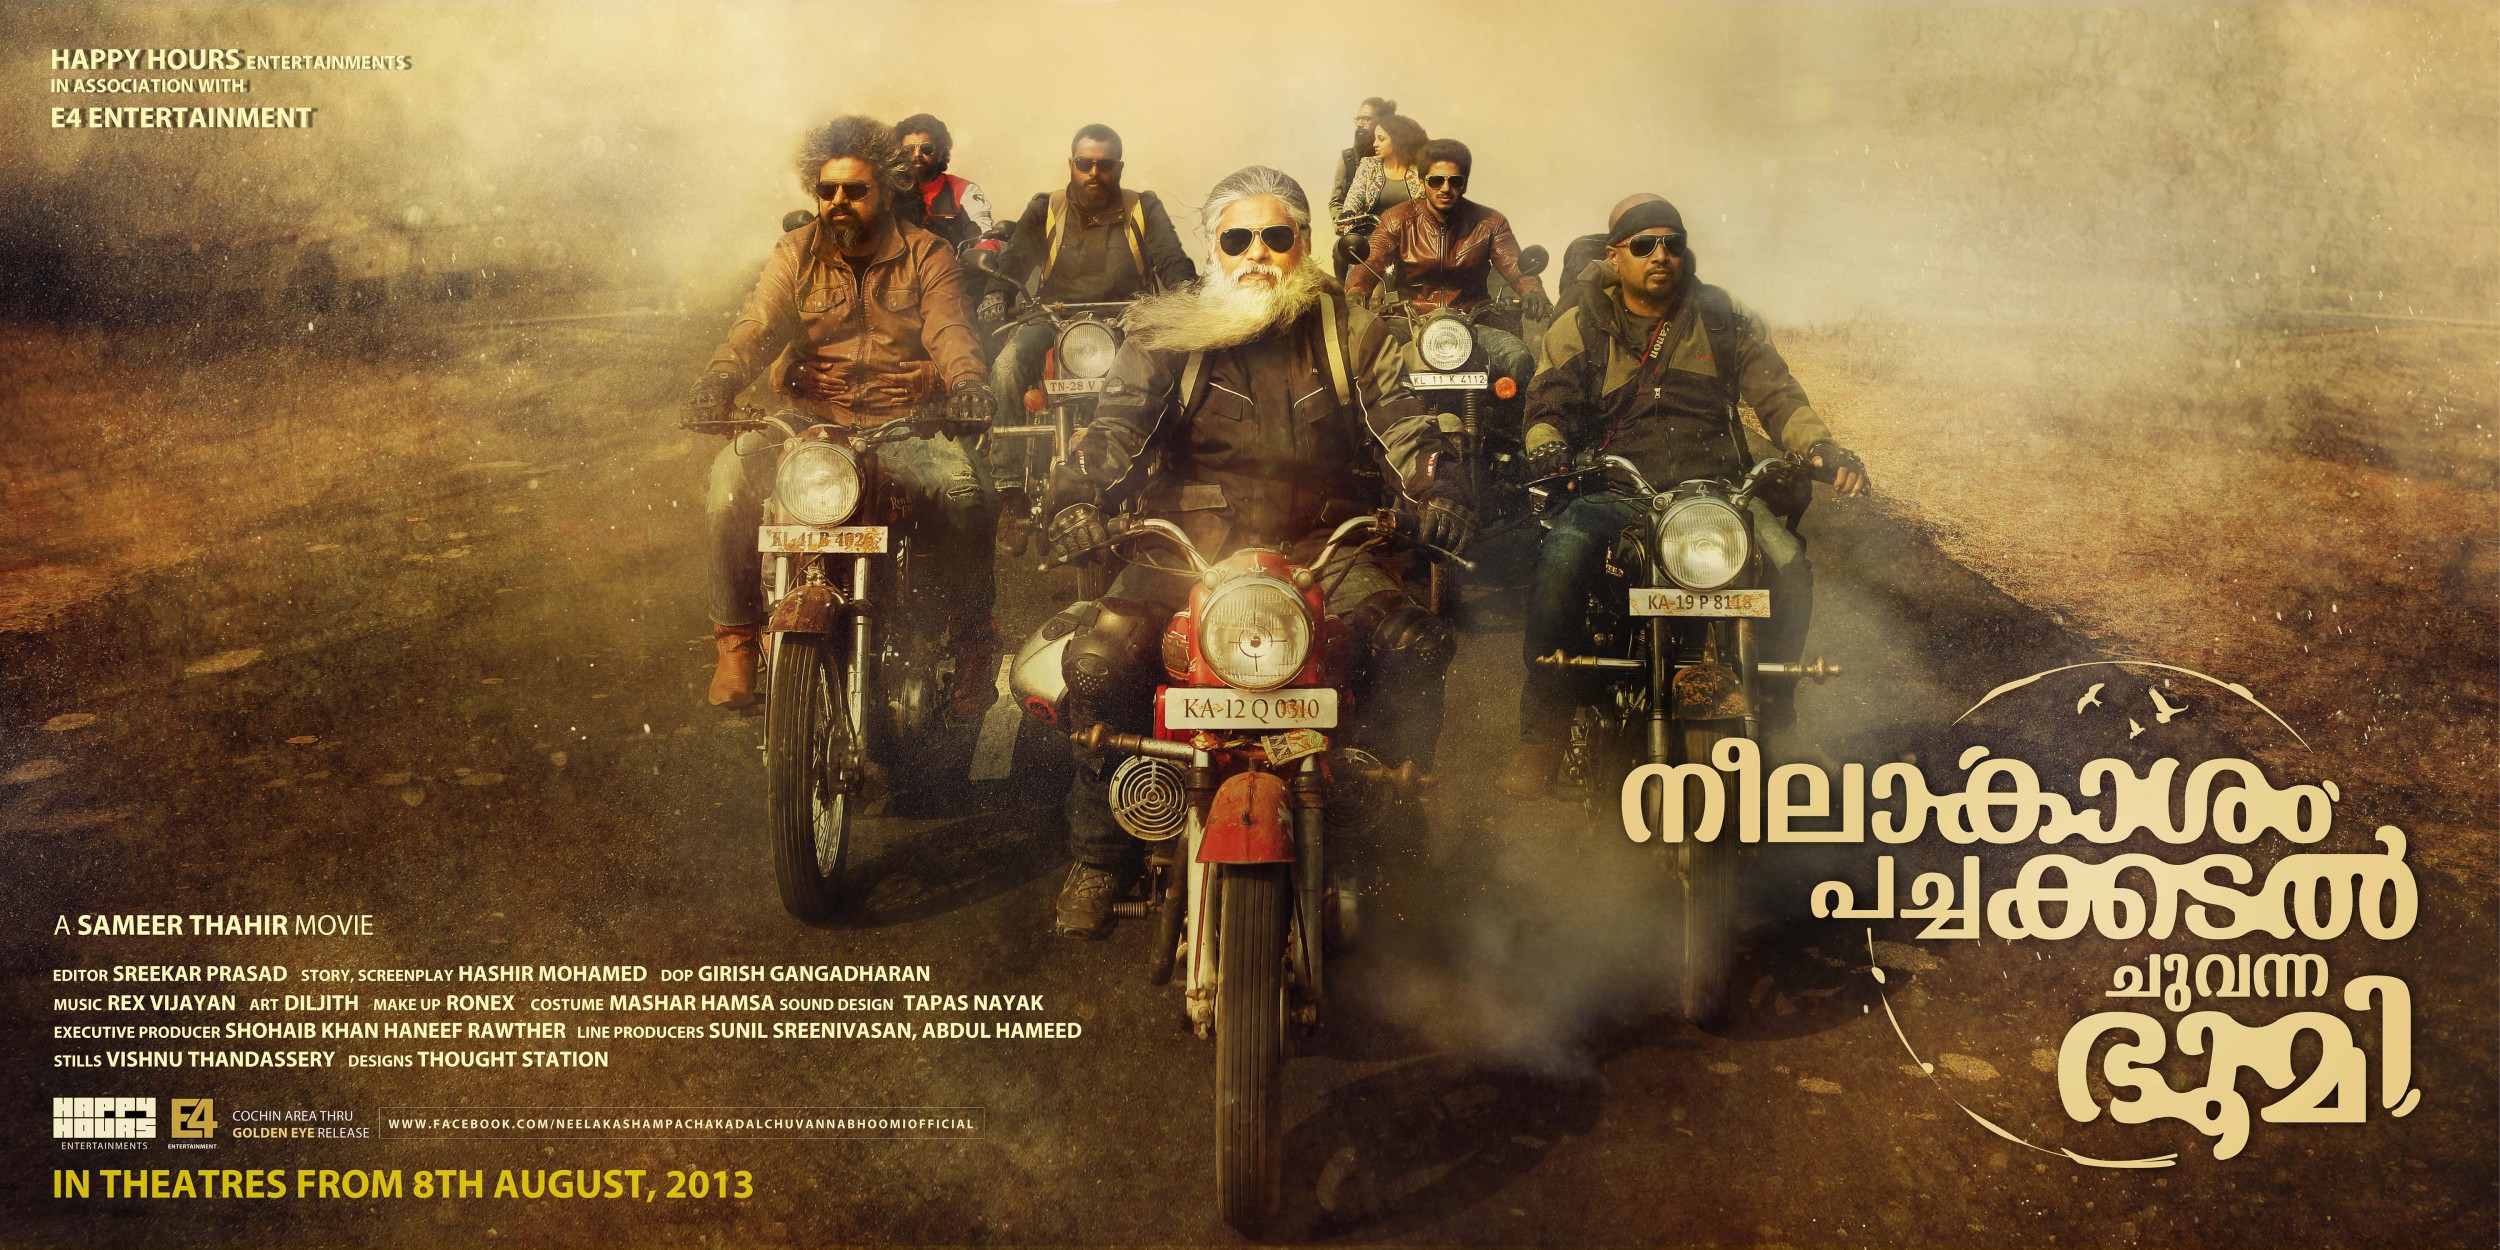 Mega Sized Movie Poster Image for Neelakasham Pachakadal Chuvanna Bhoomi (#6 of 15)